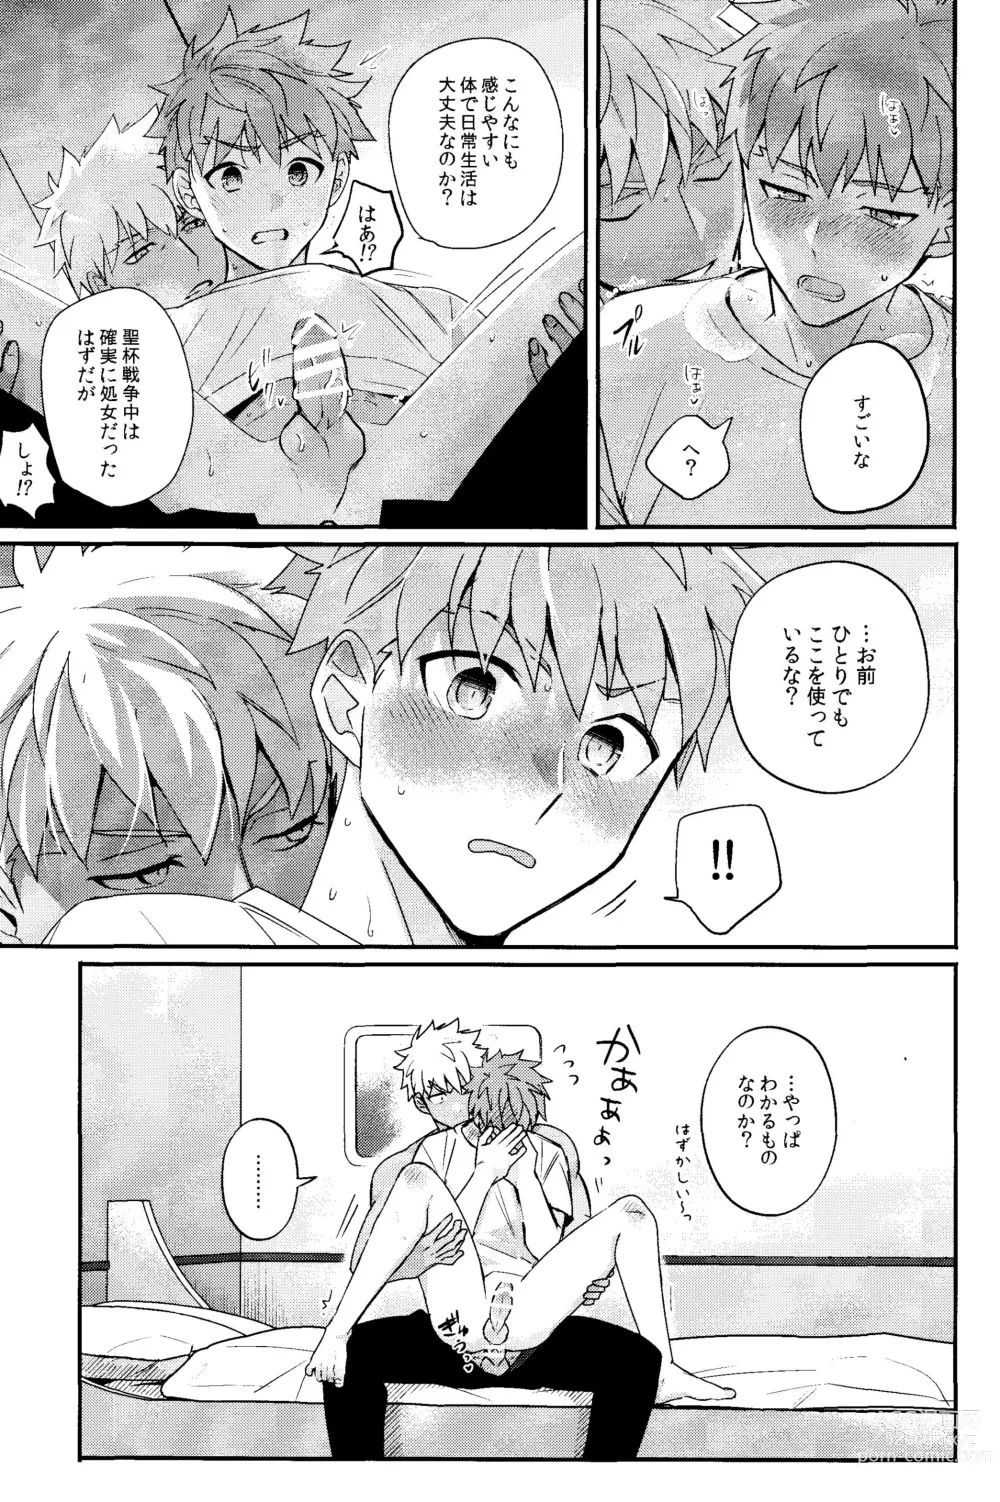 Page 14 of doujinshi Iru